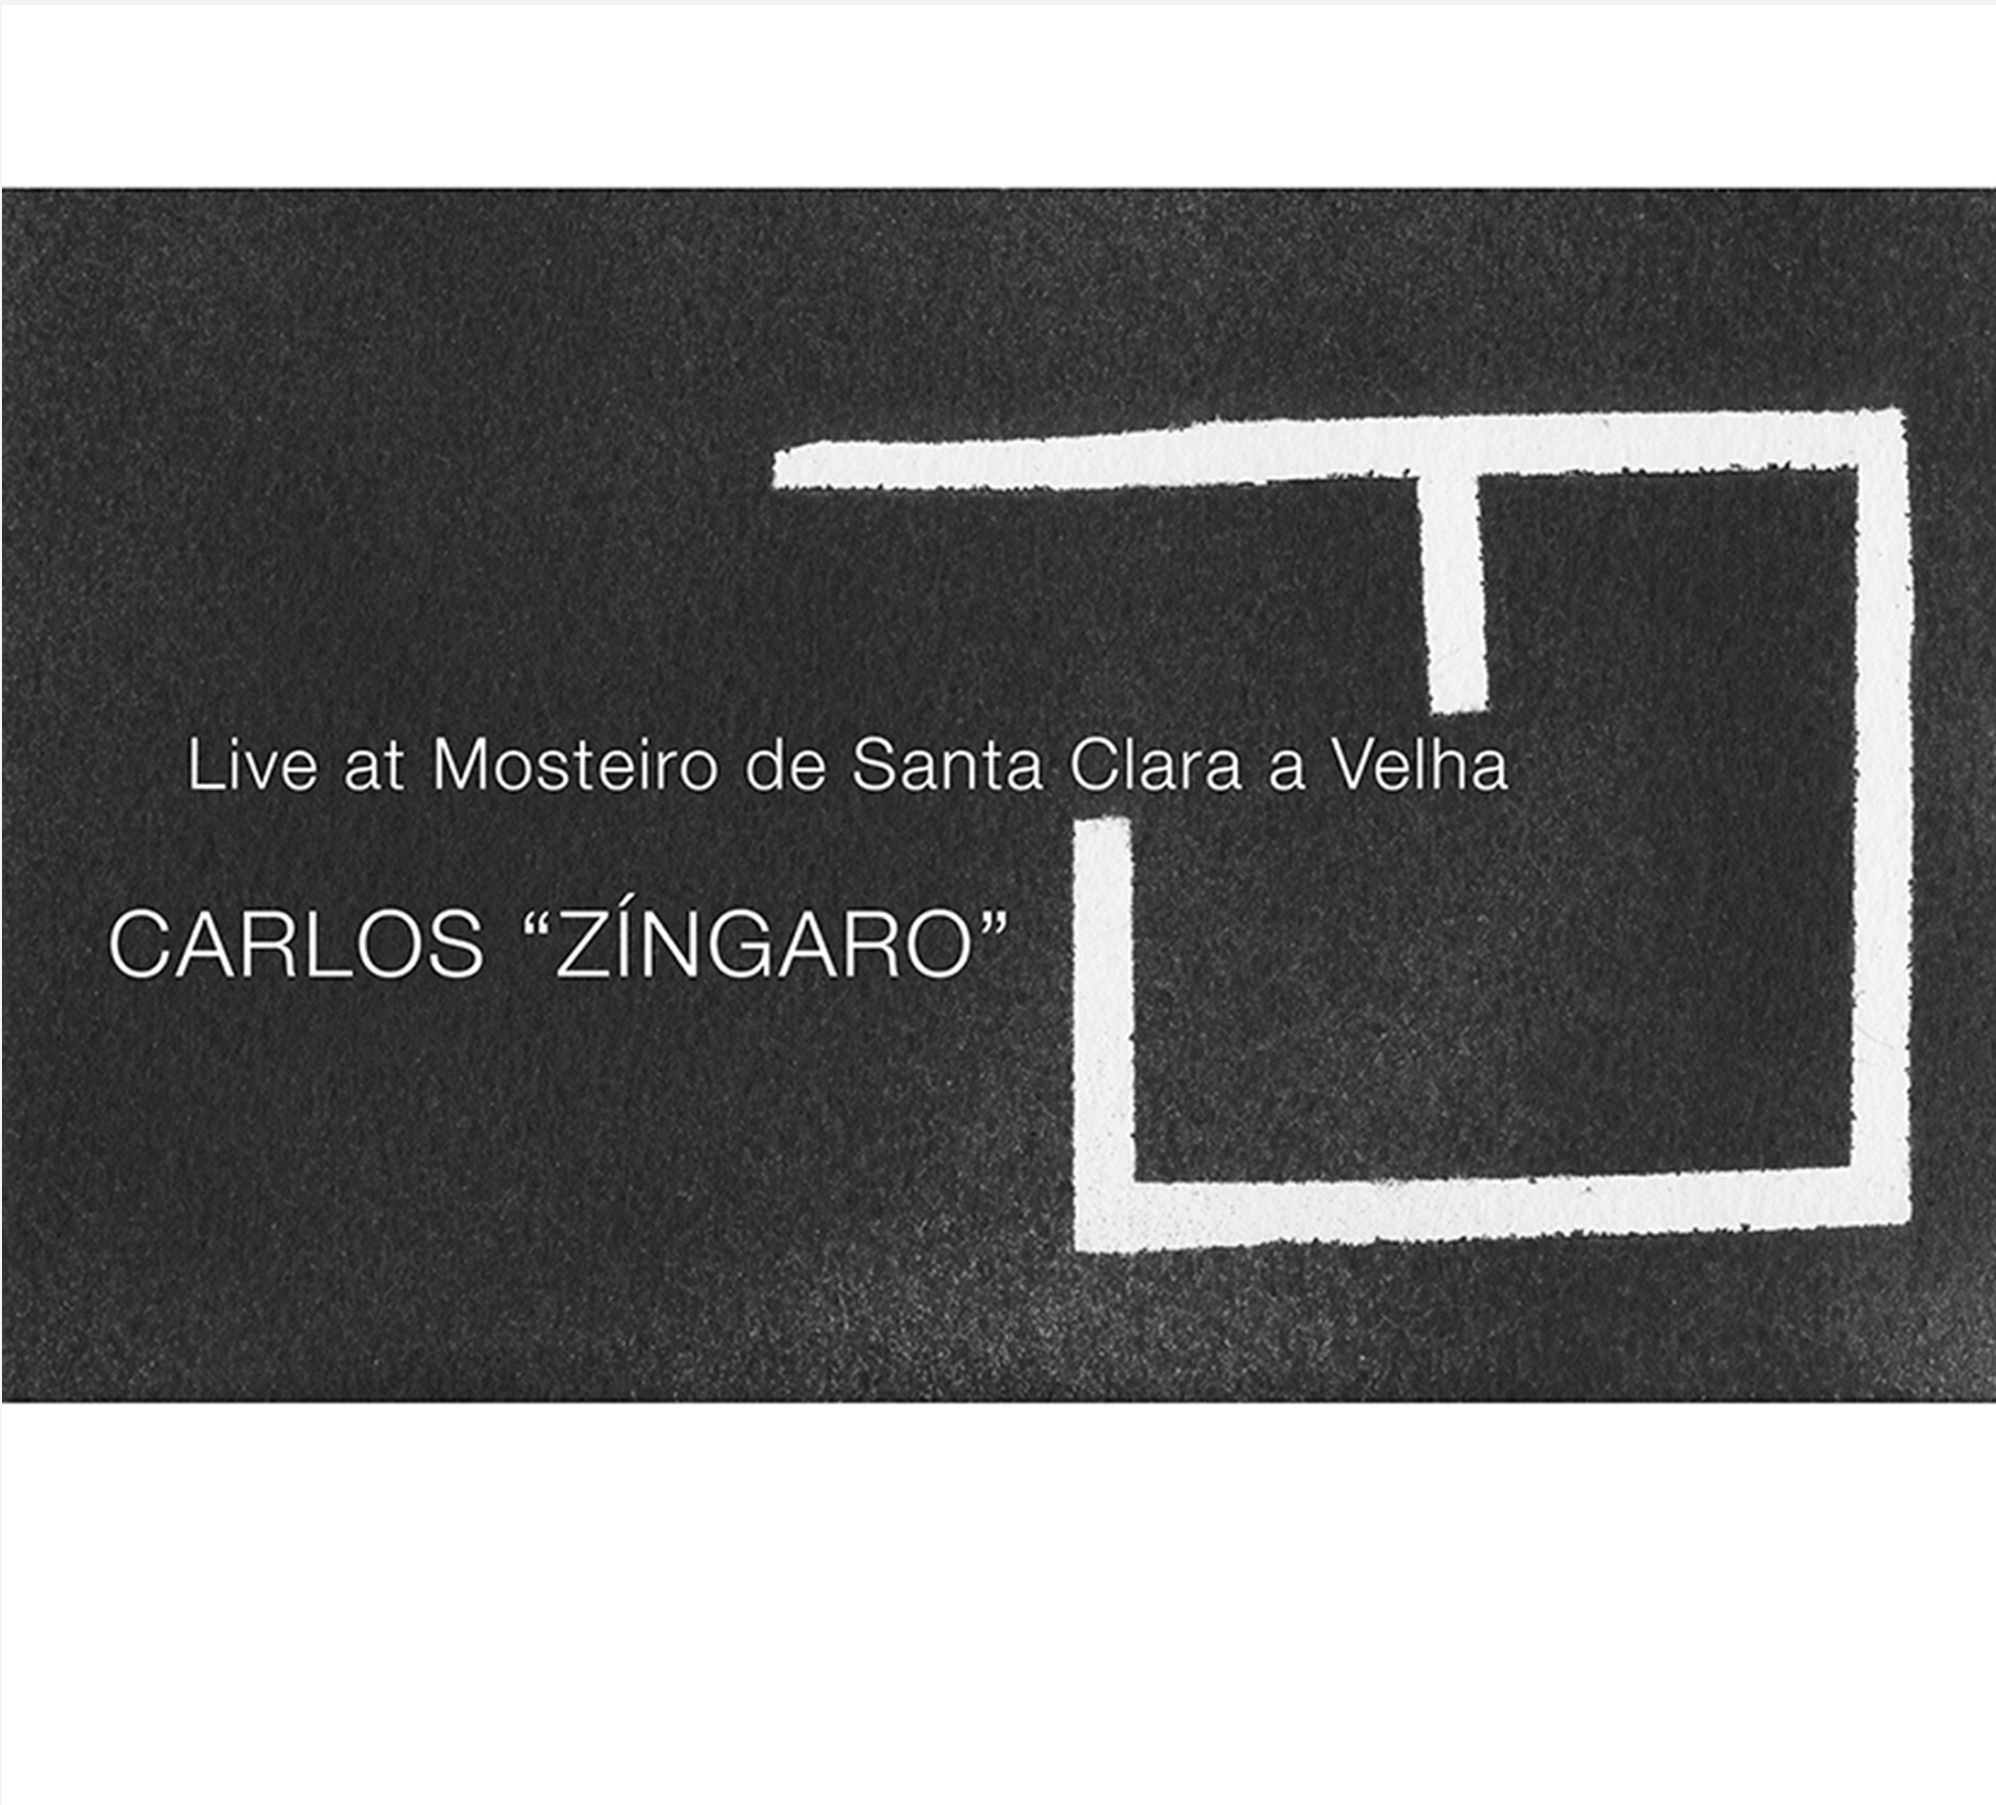 CARLOS ZINGARO - Live at Mosteiro de Santa Clara a Velha cover 